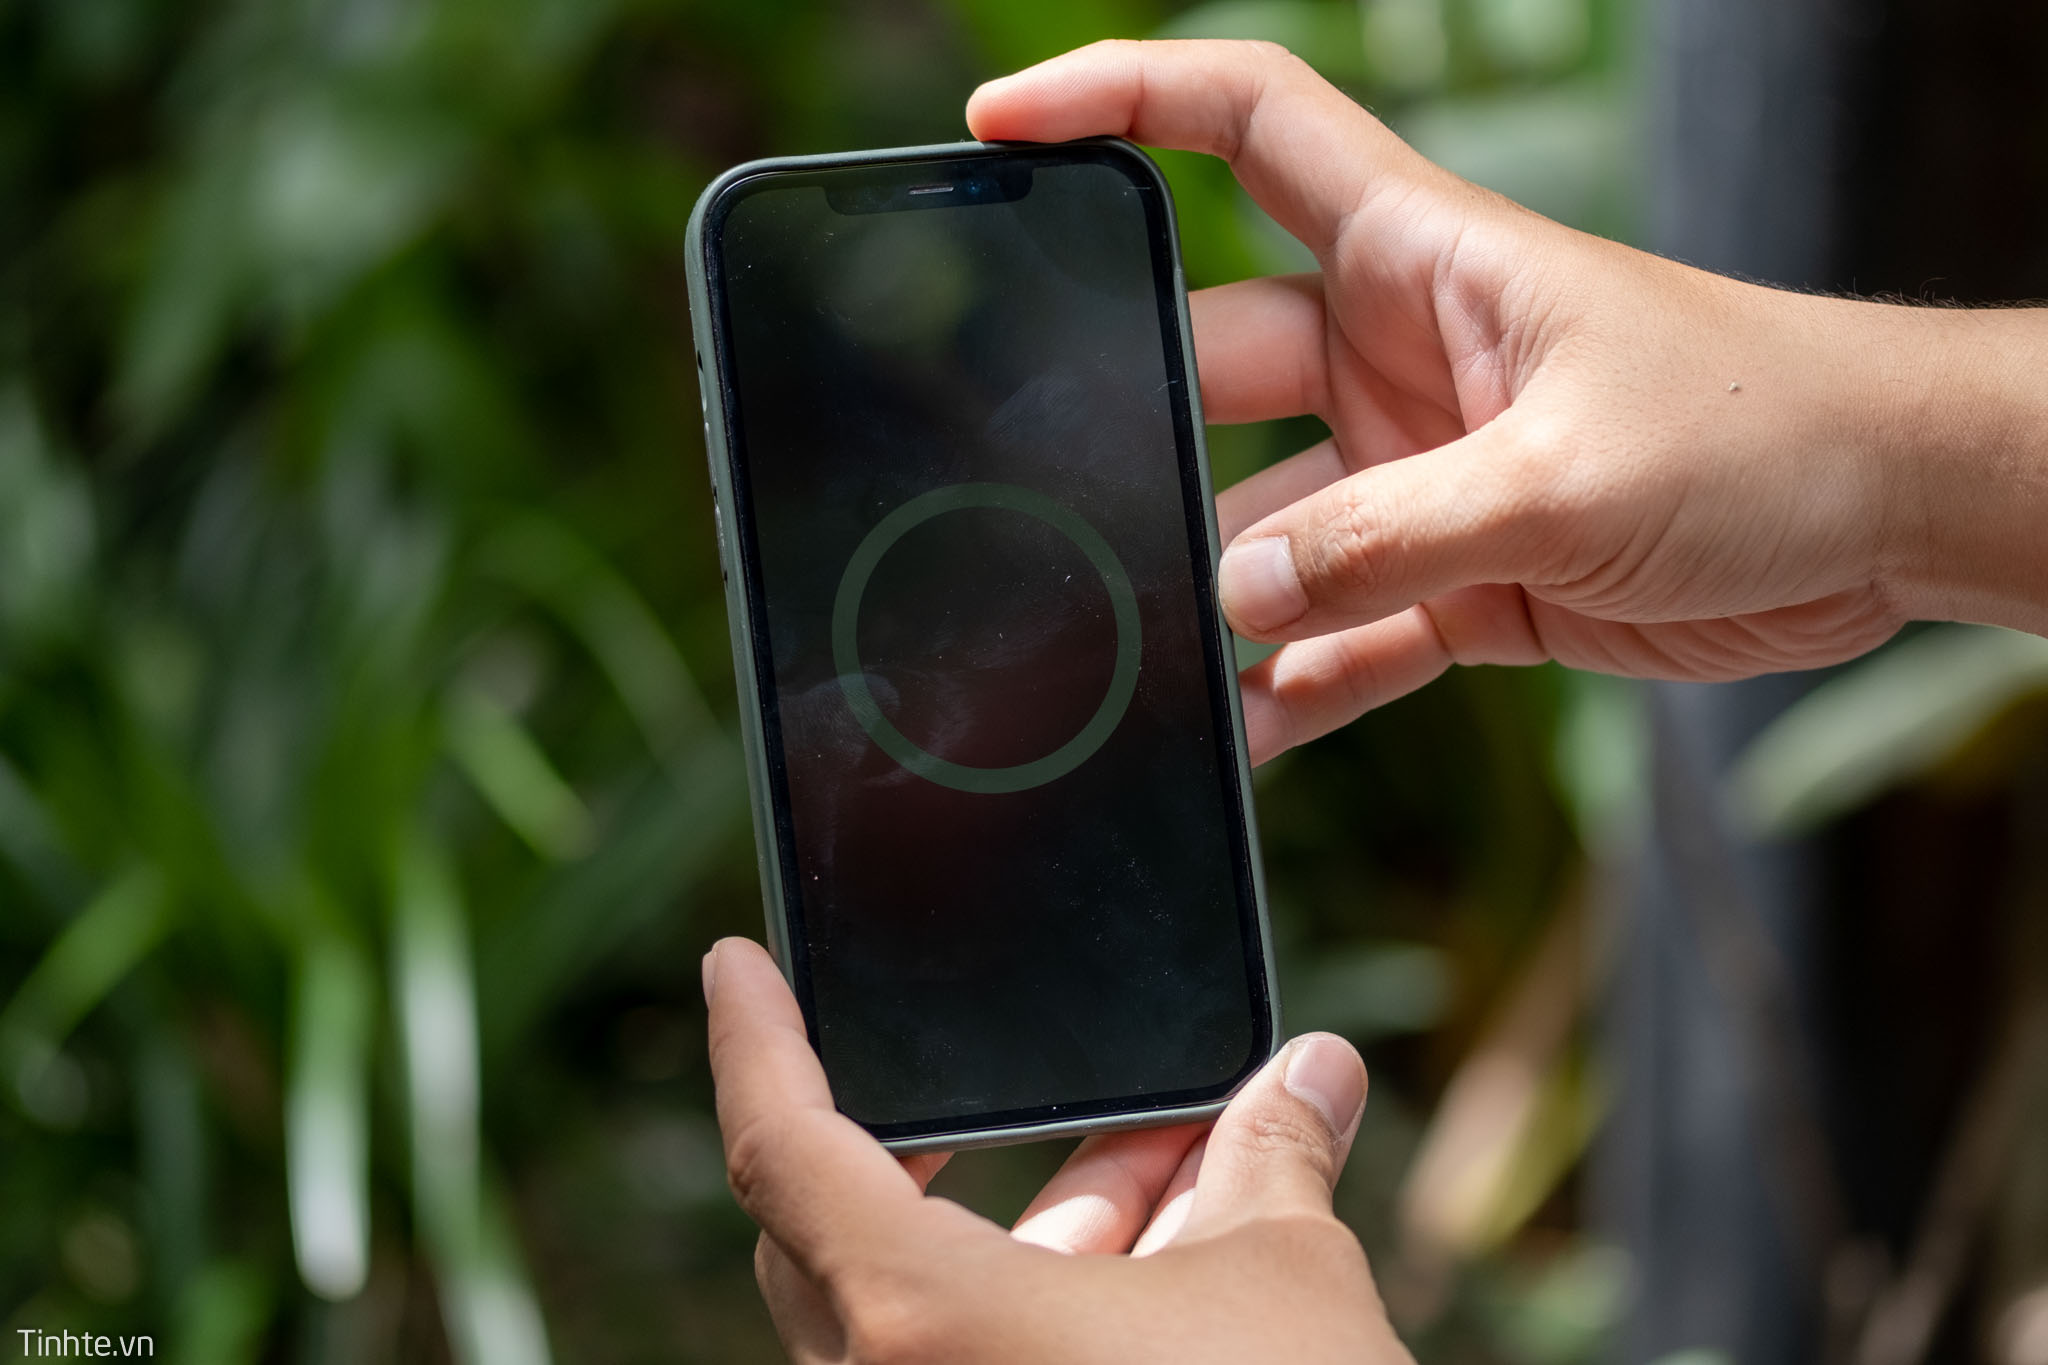 Review ốp lưng silicone Apple dành cho iPhone 12 Pro Max: không xịn như mong đợi